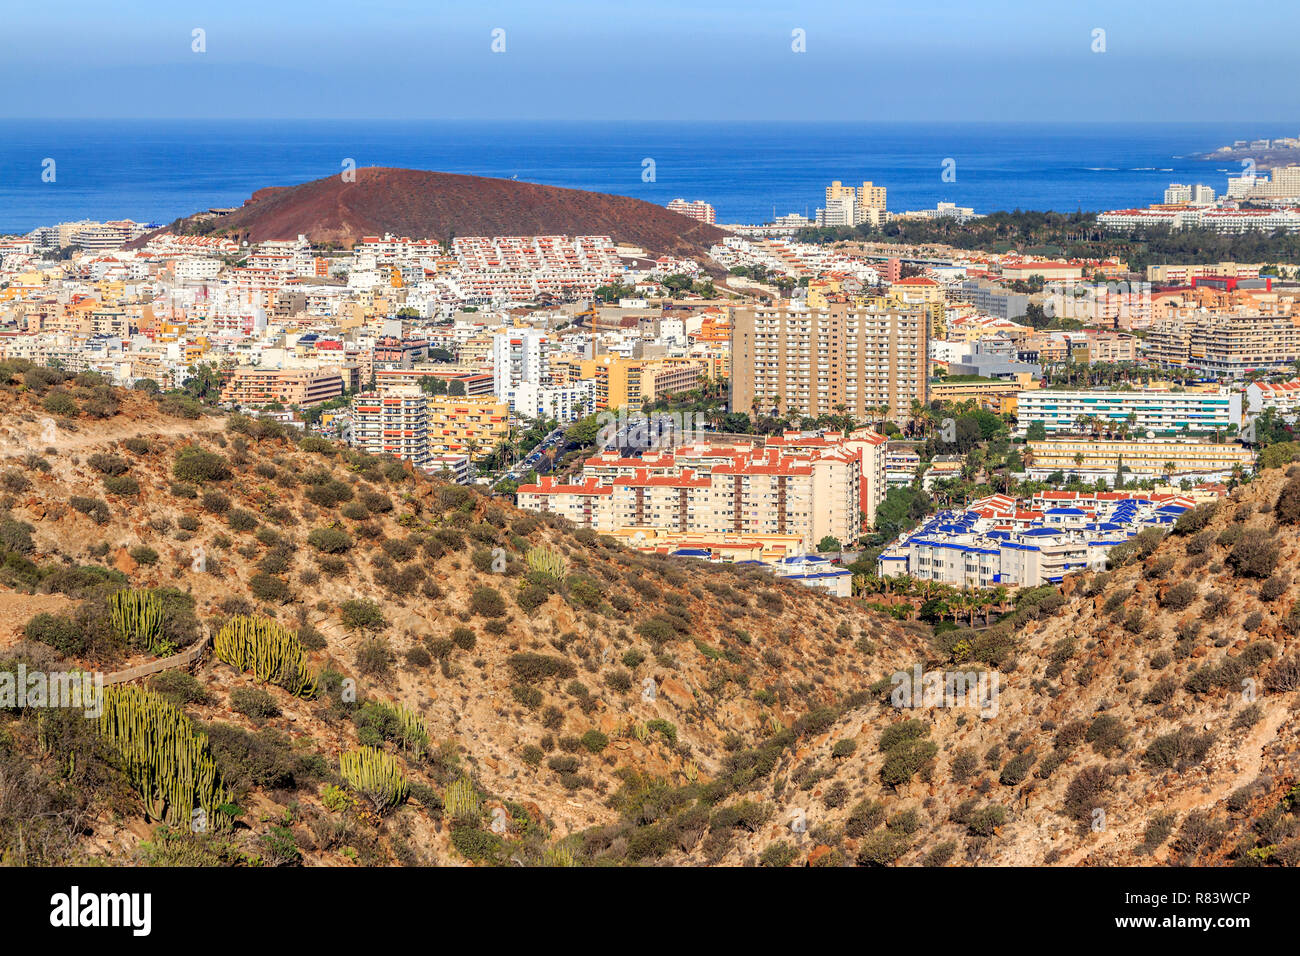 Los Cristianos , Playa de las Americas, Tenerife, Isole canarie, un isola spagnola, Spagna,al largo della costa del nord Africa occidentale. Foto Stock